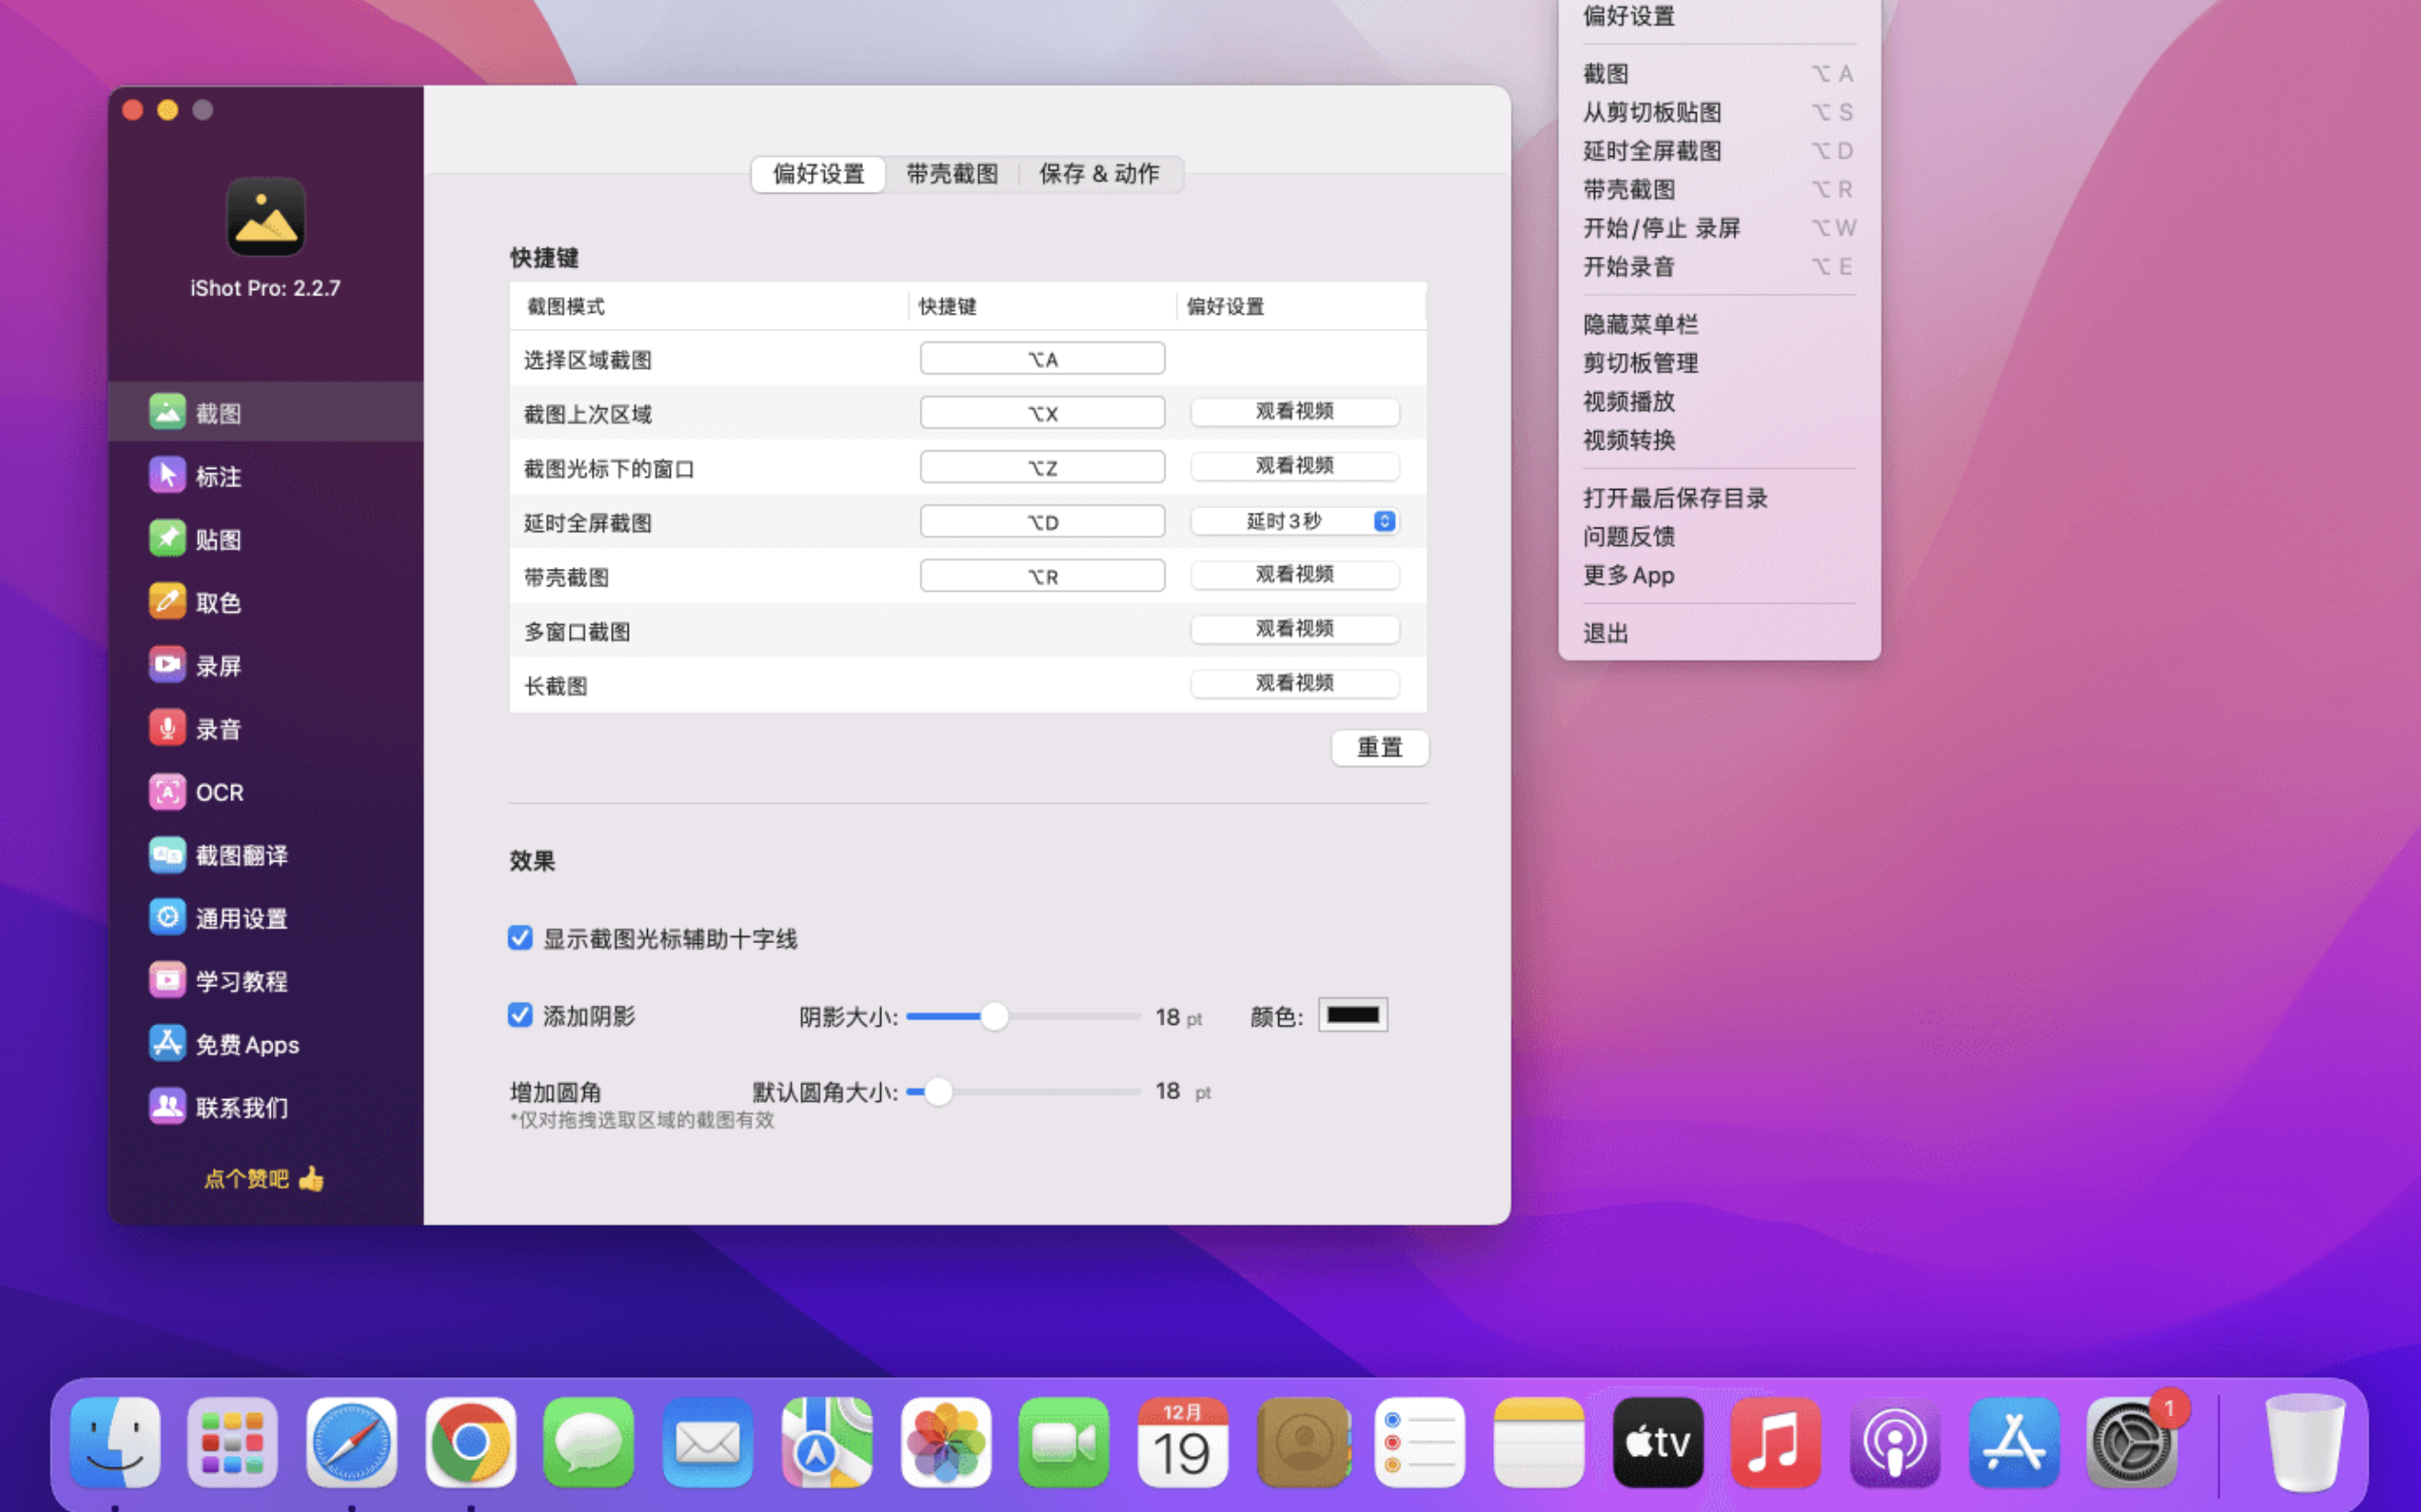 iShot Pro for Mac v2.3.2 中文破解版 电脑截图小工具 苹果电脑